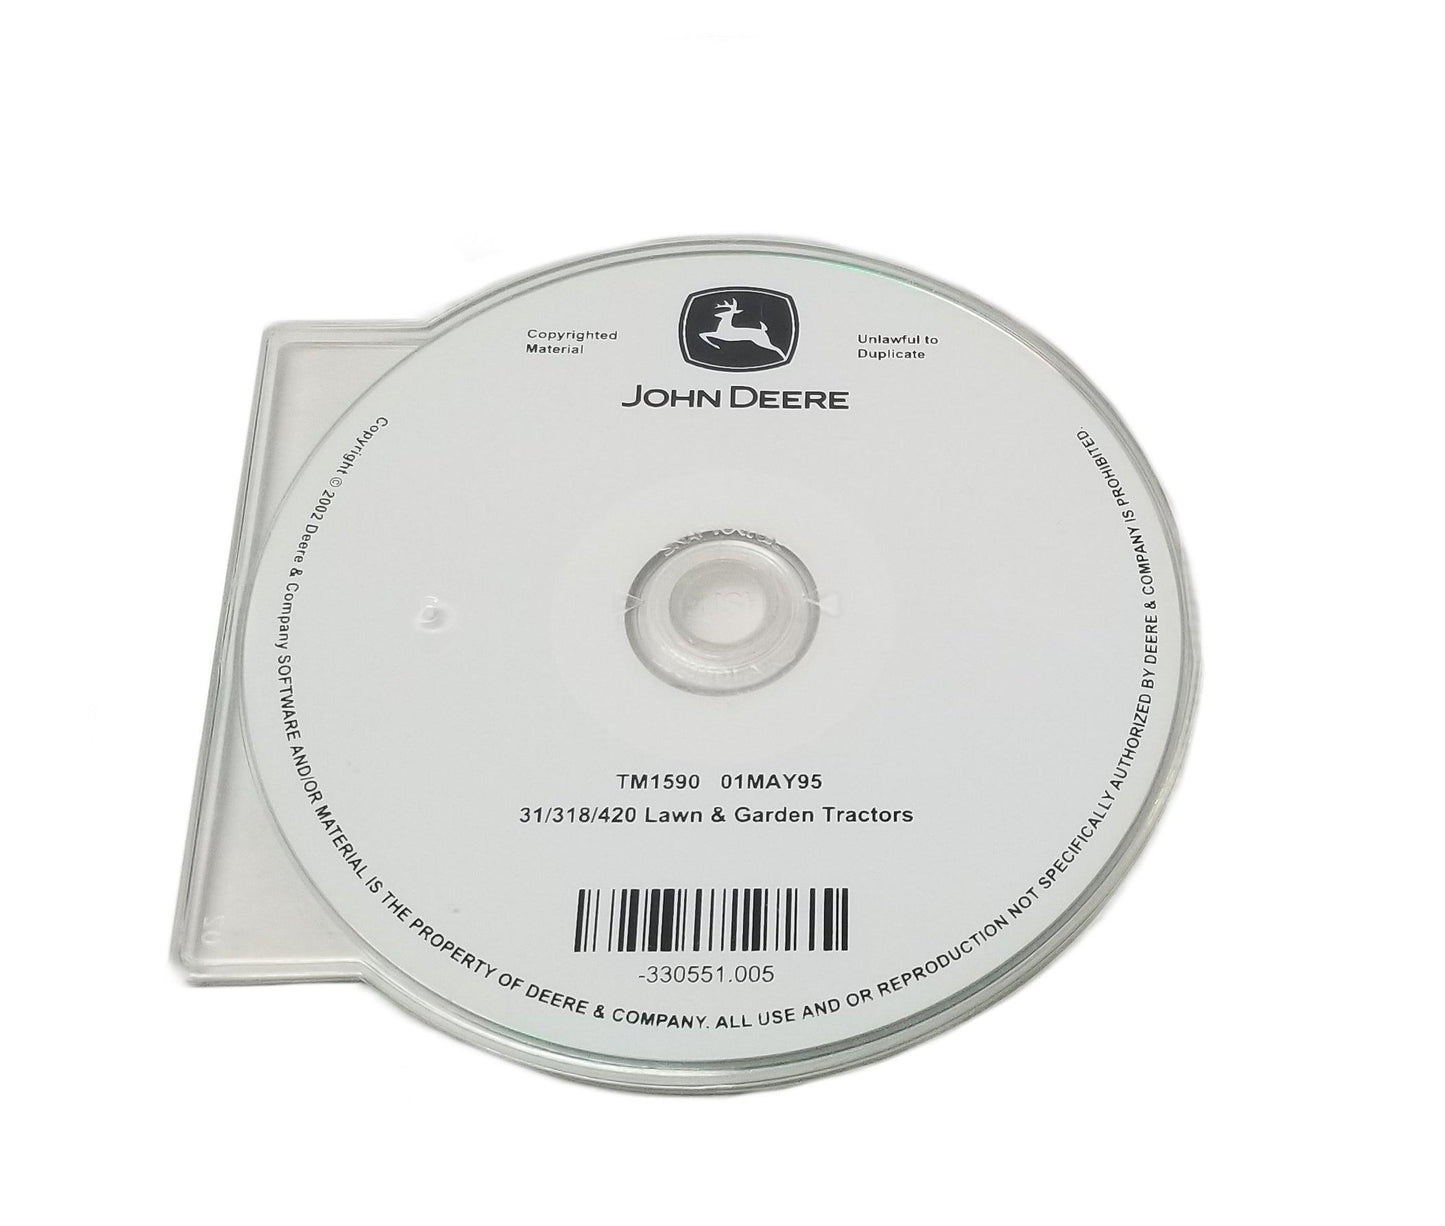 John Deere Technical/Repair Manual on CD-Rom for 316, 318 and 420 - TM1590CD